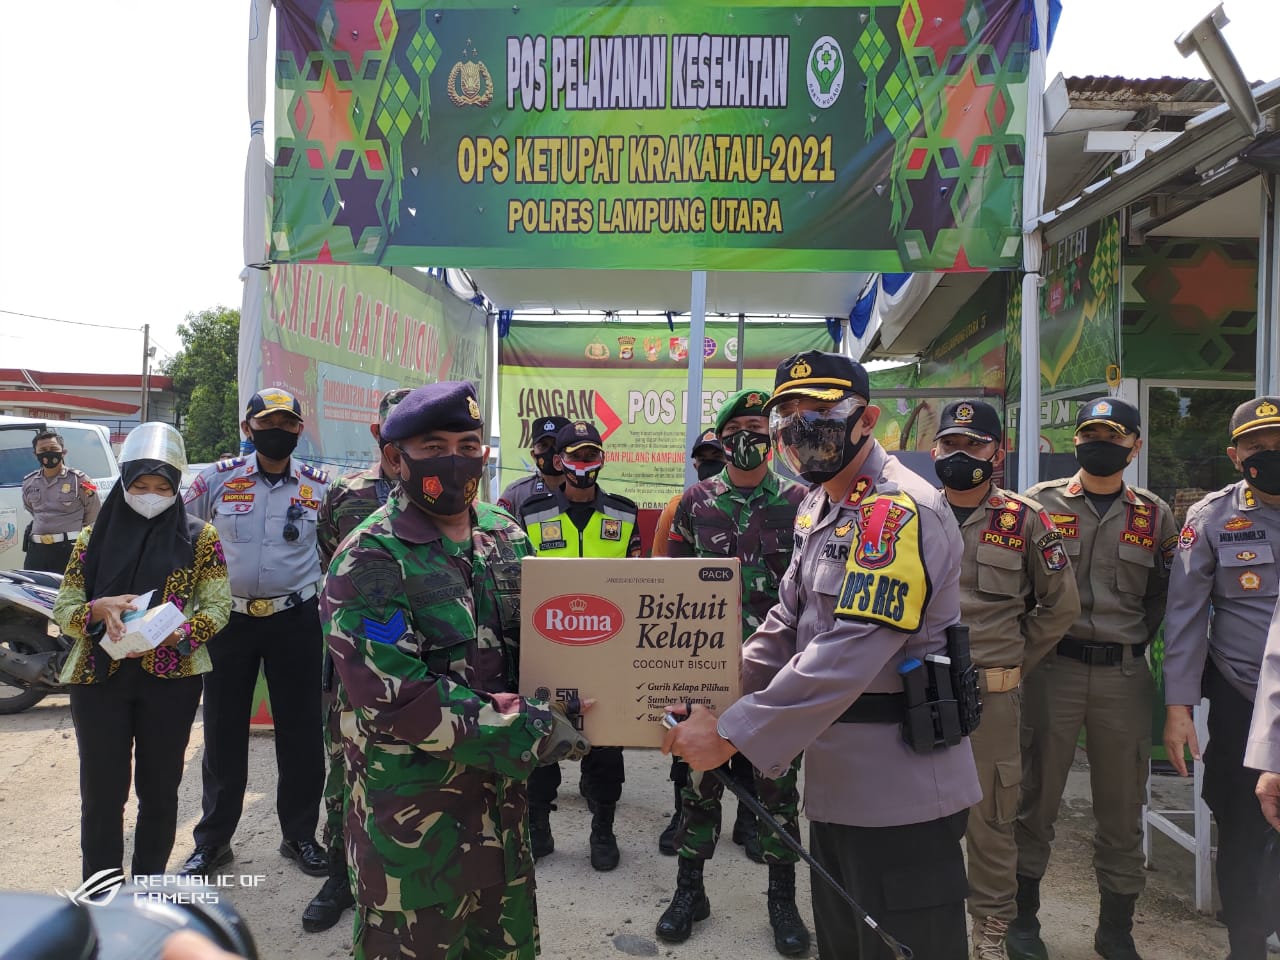 Waka Polda Lampung Kunjungi Pos Pengamanan Ops Ketupat Krakatau 2021 Lampung Utara